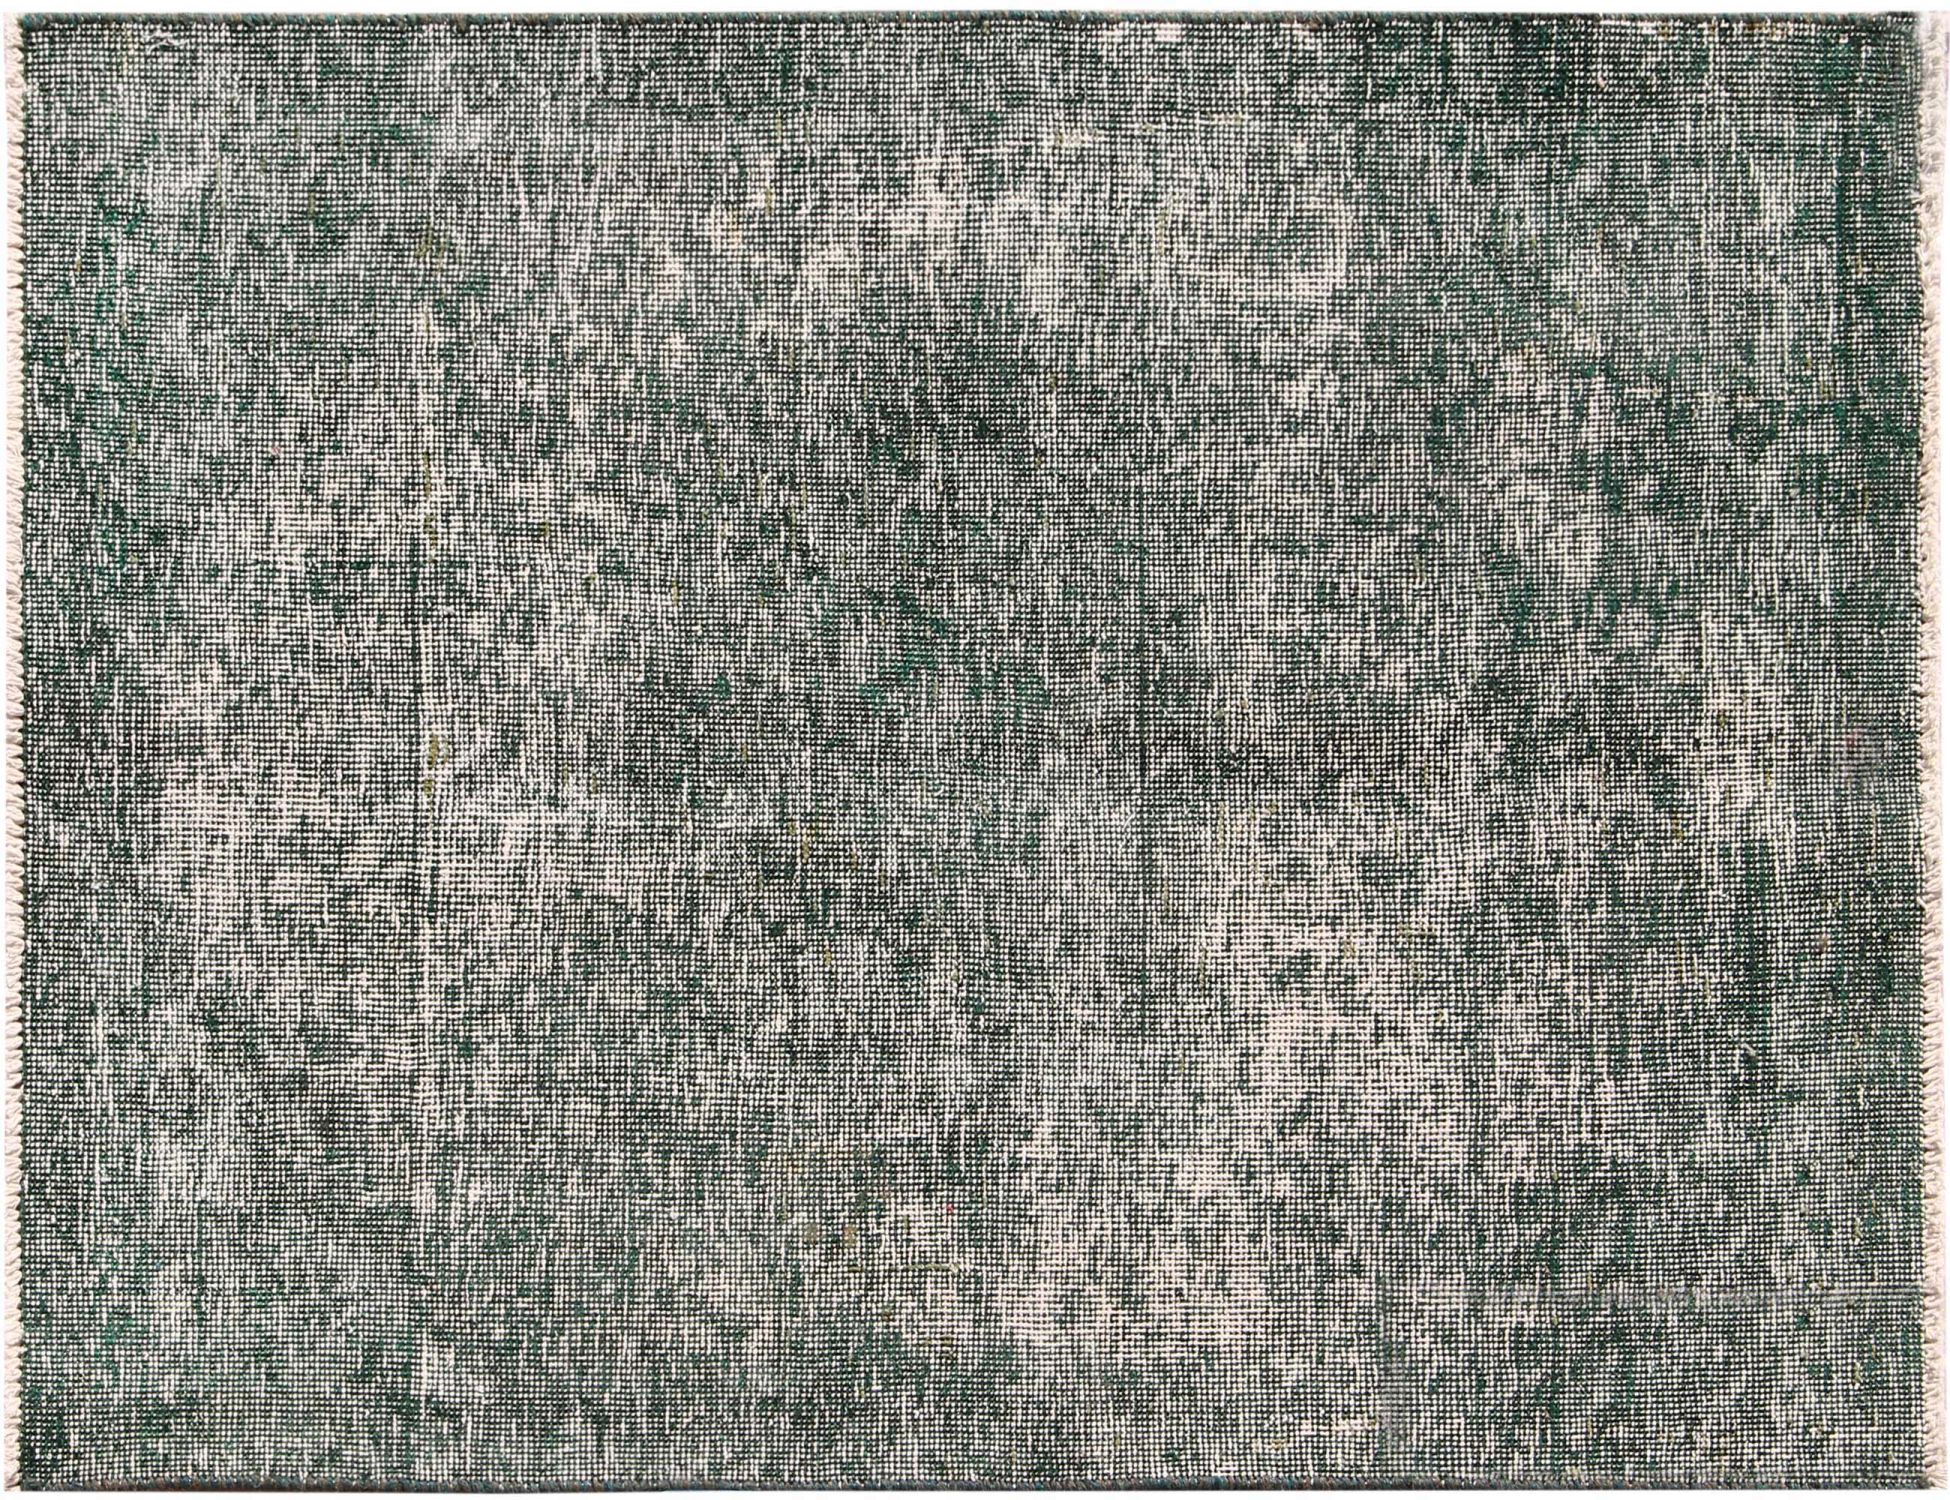 Persischer Vintage Teppich  grün <br/>145 x 100 cm